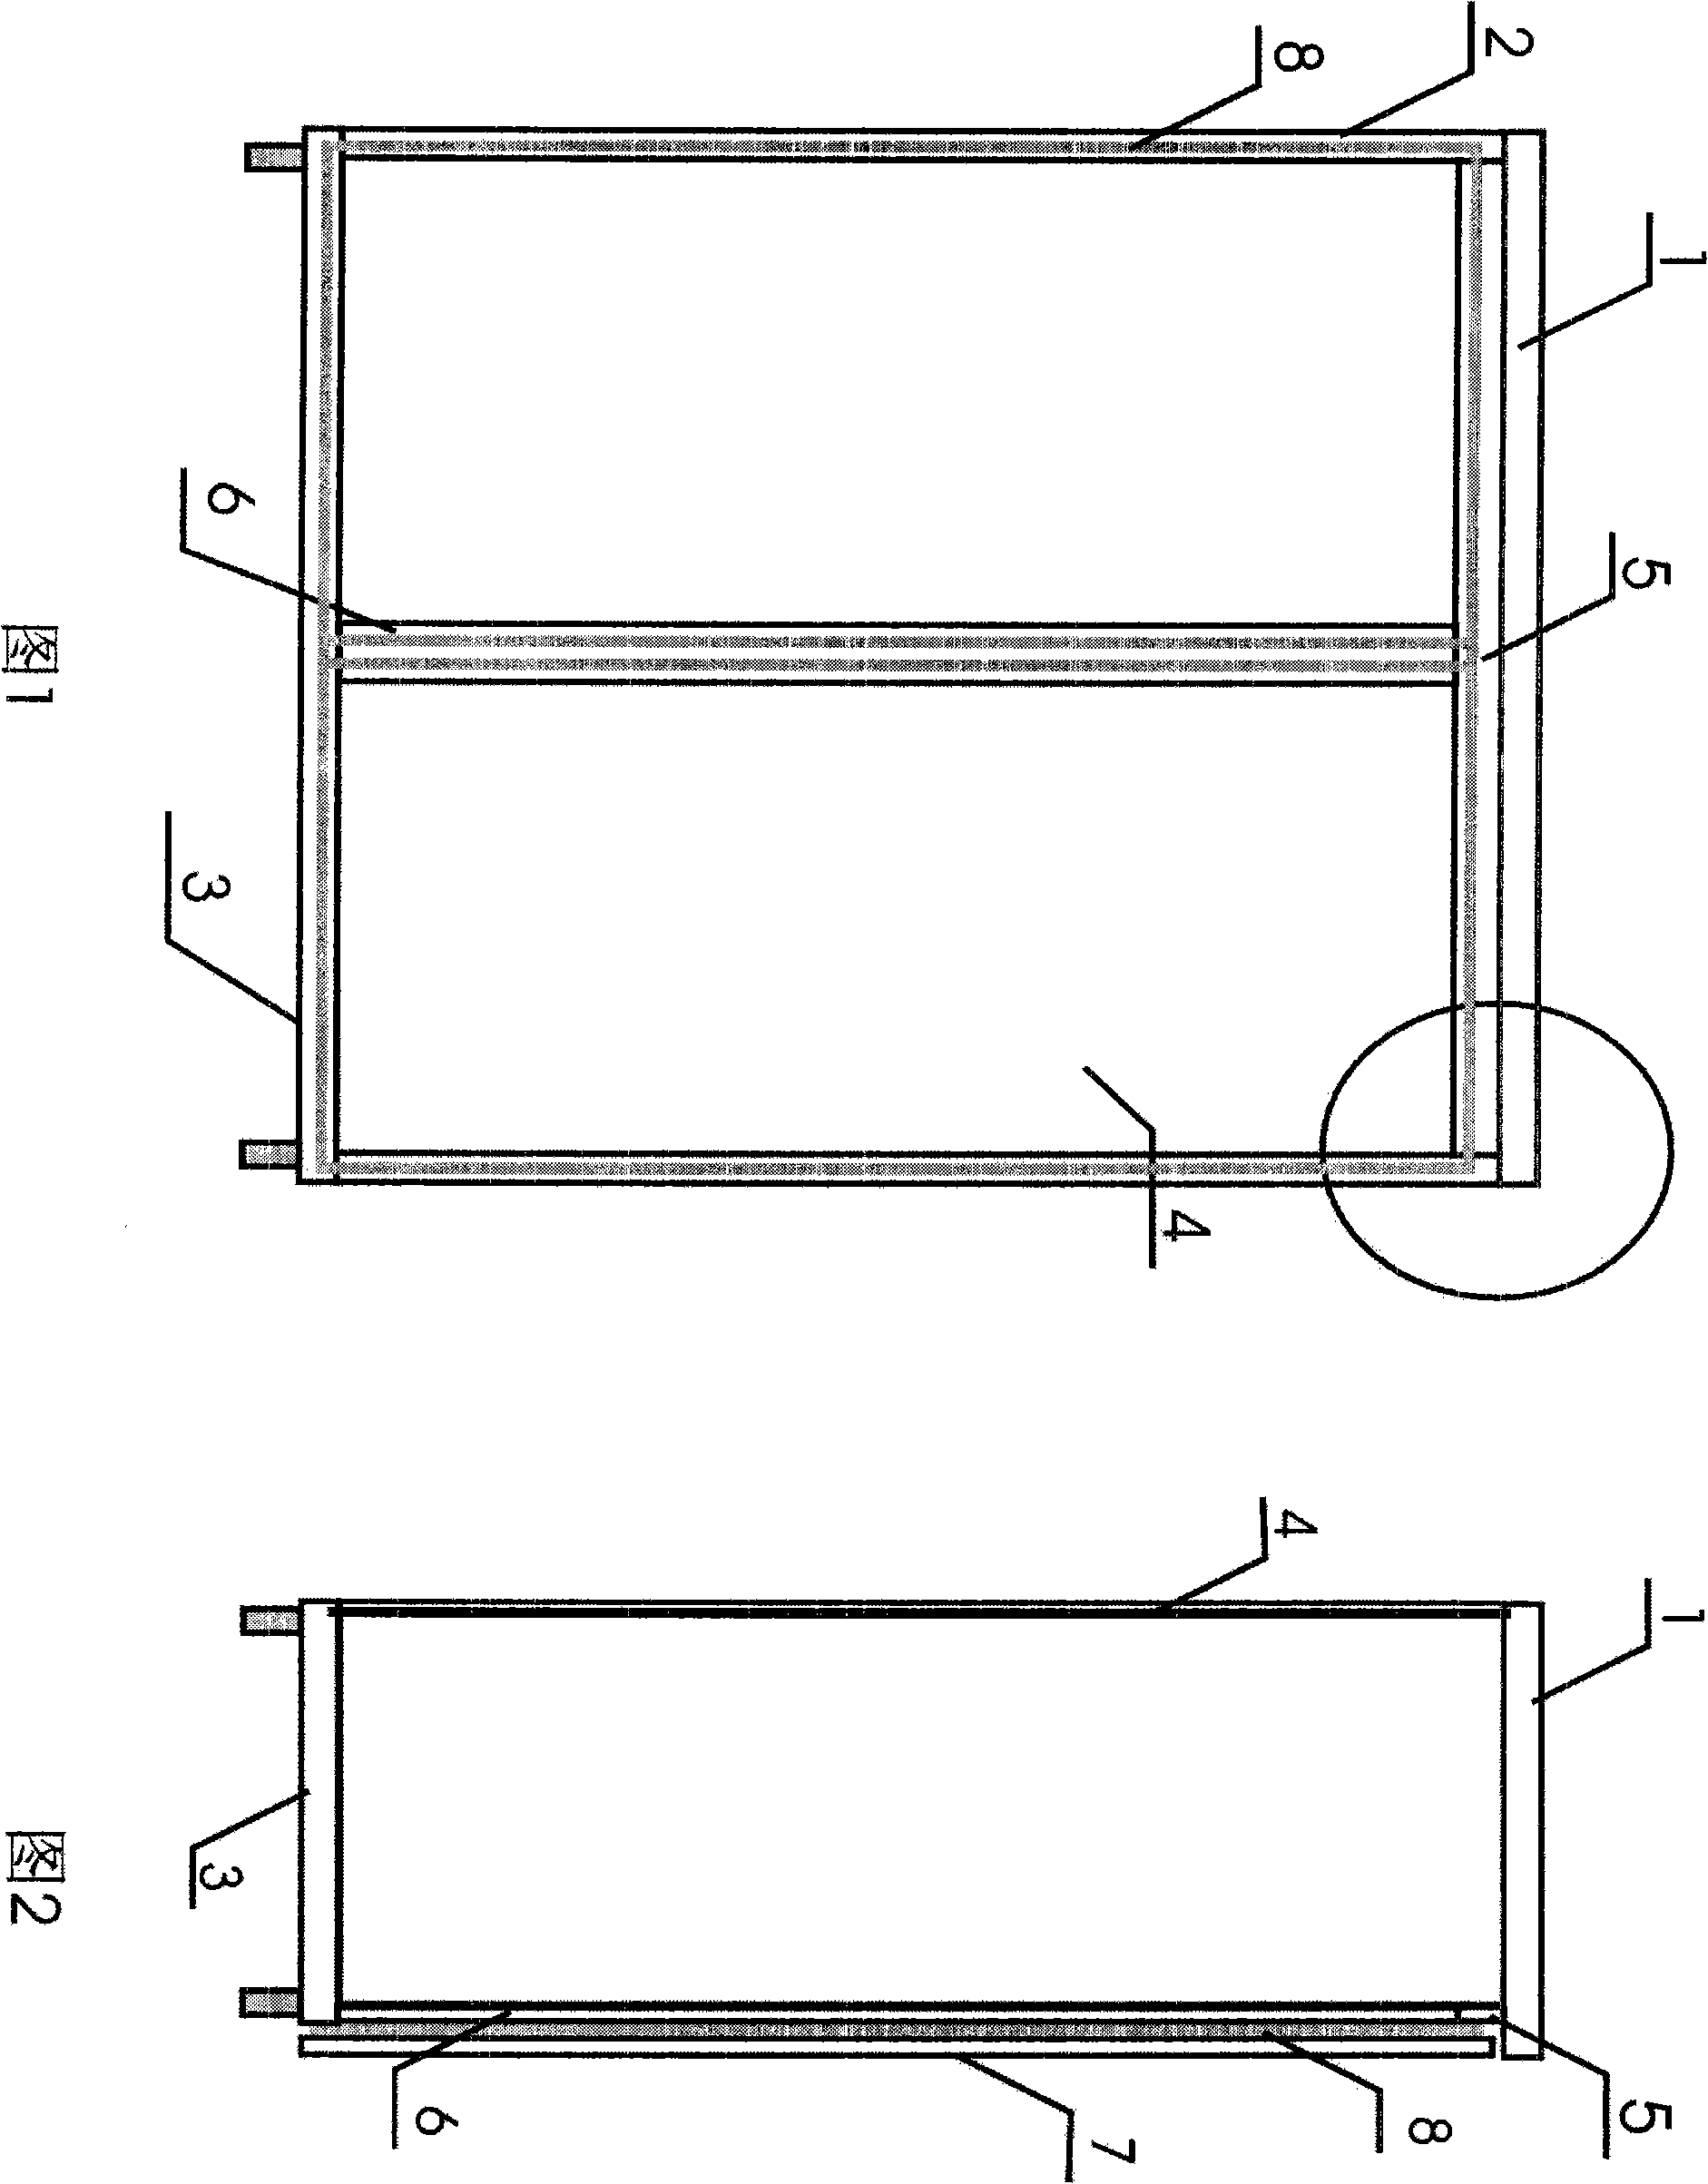 Sealing method of cabinet